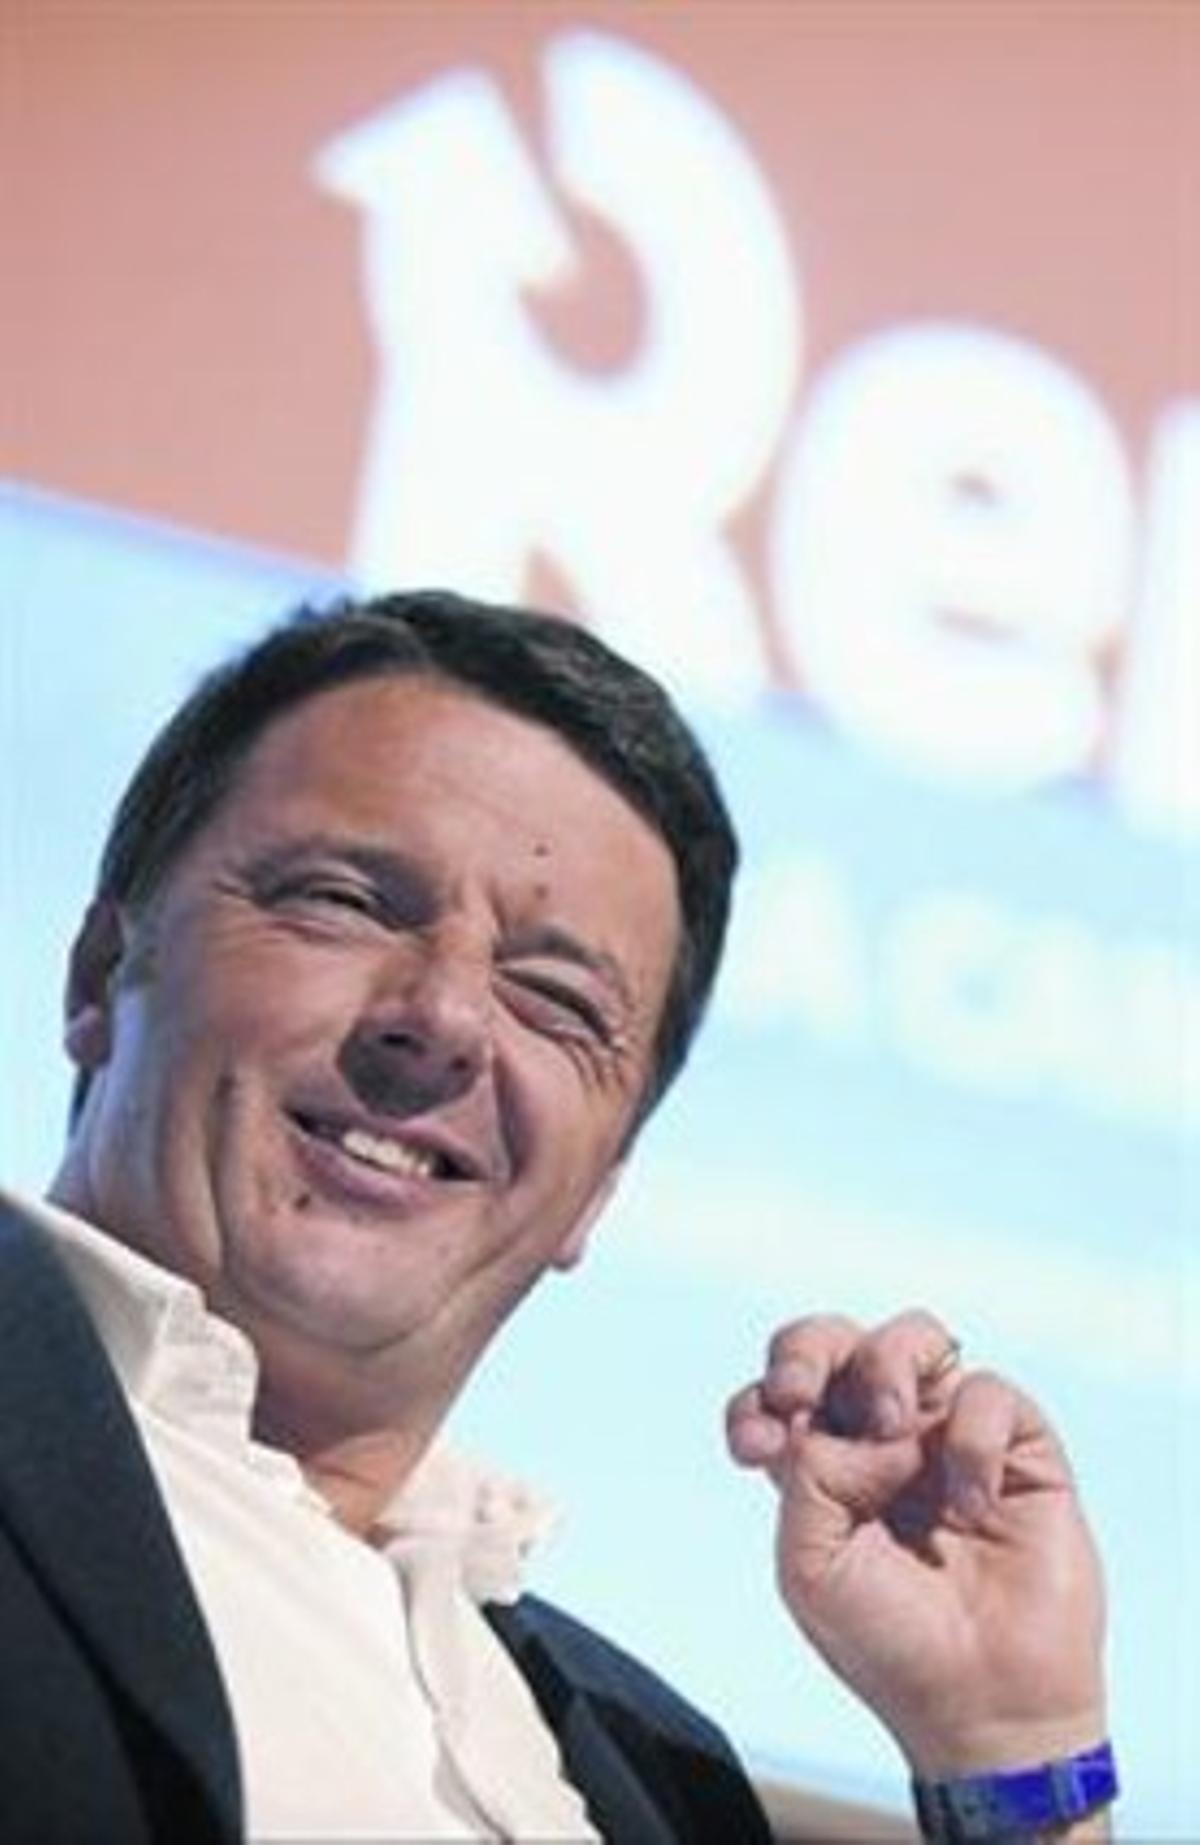 Matteo Renzi, nou líder del Partit Democràtic.